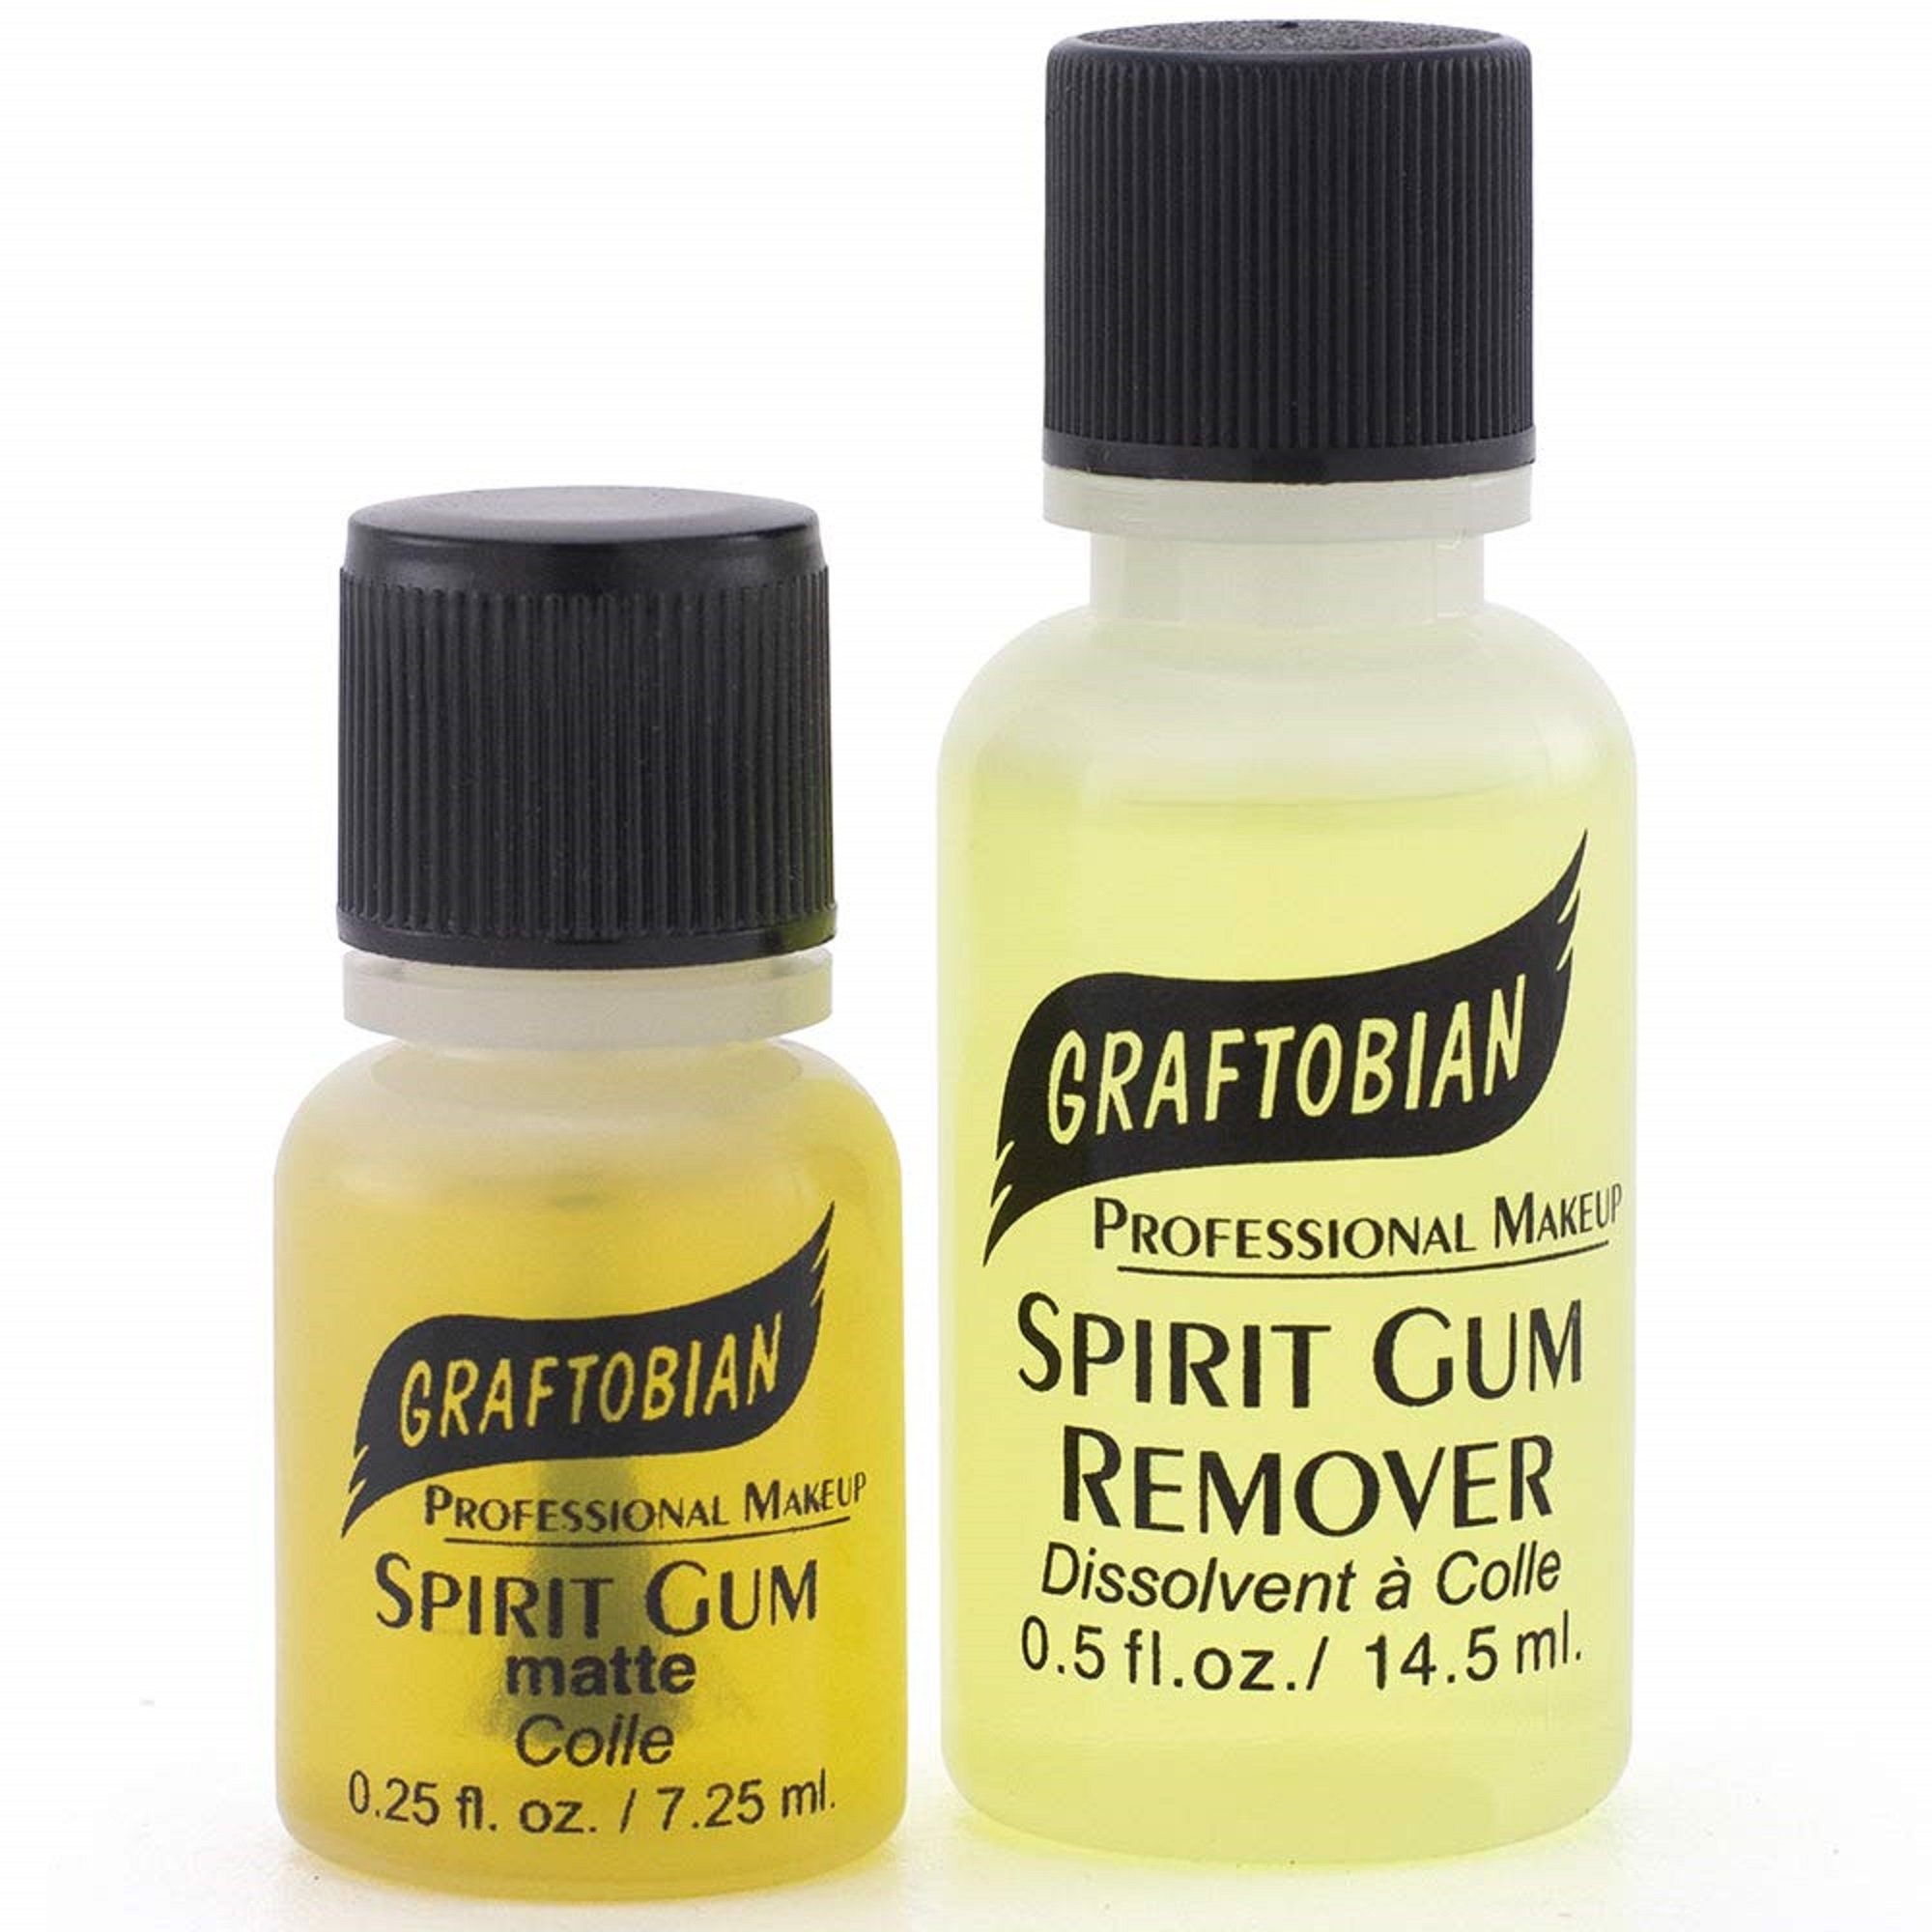 Mehron 1oz. Spirit Gum Remover